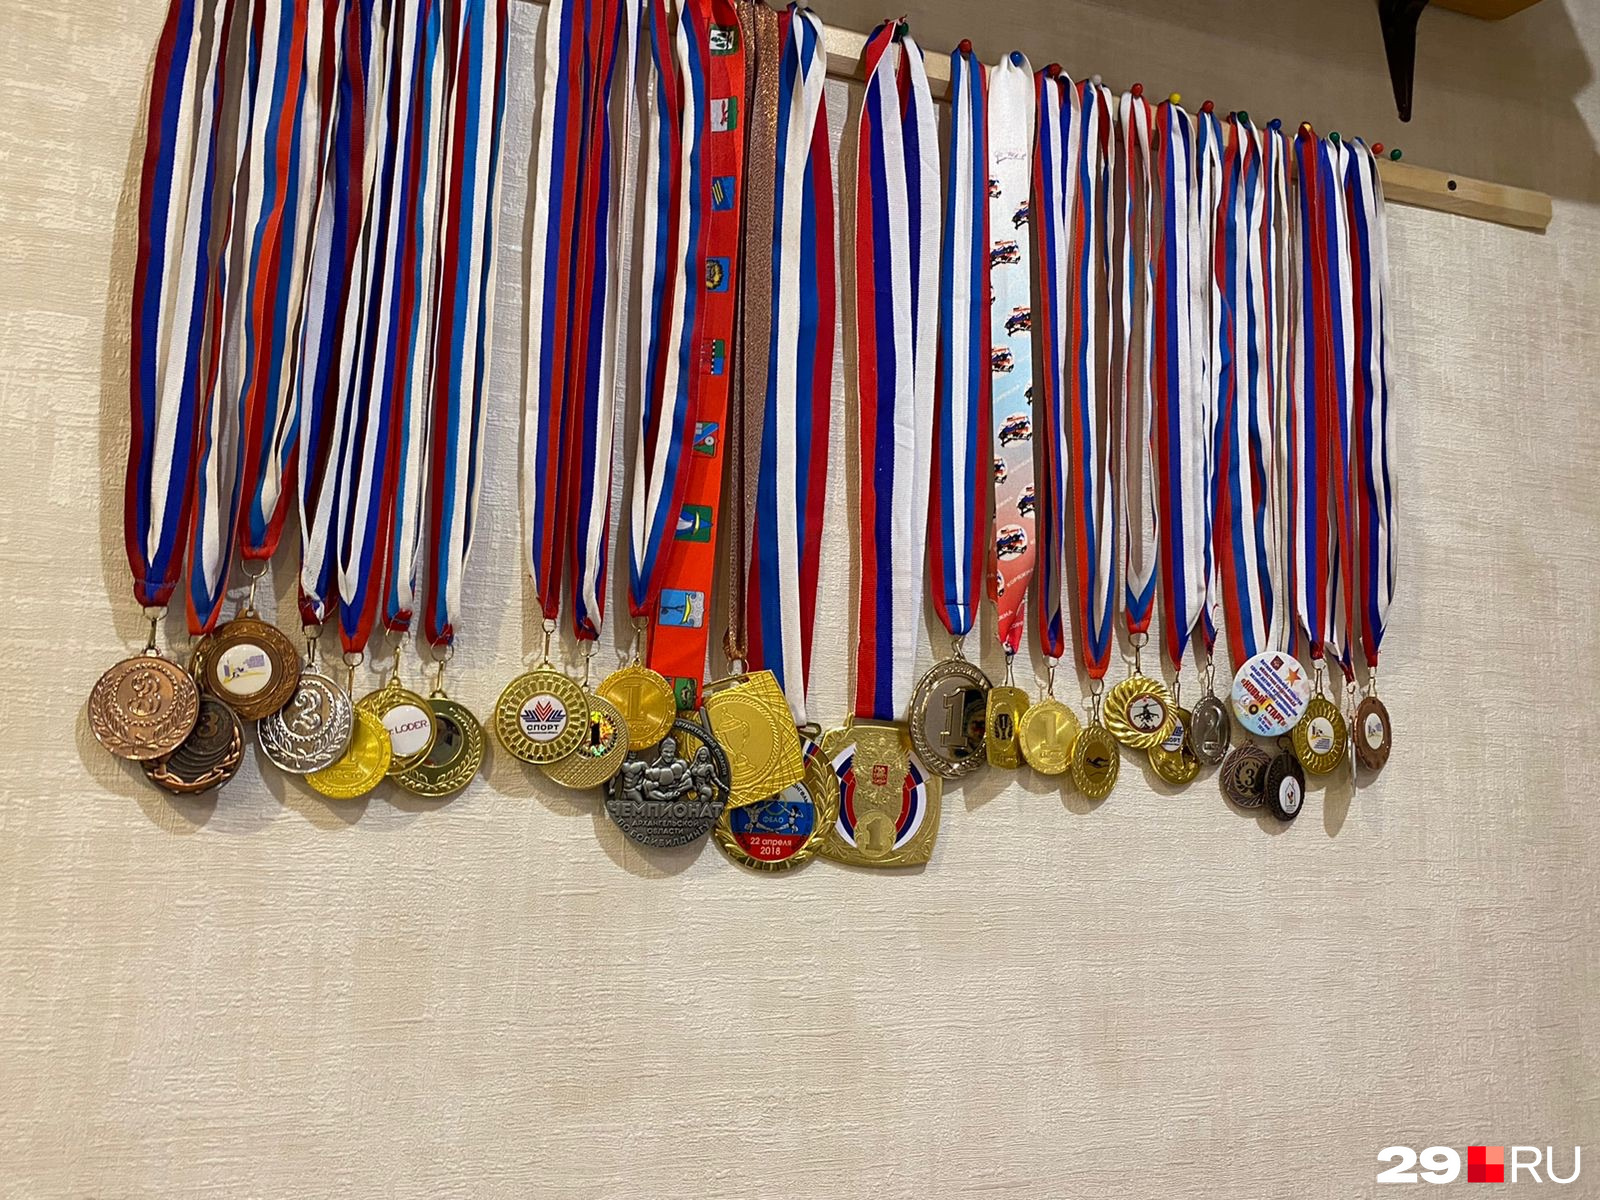 Много наград. Много медалей фото. Много наградных медалей на ногах. Очень много медалей азербайджанских первых мест.